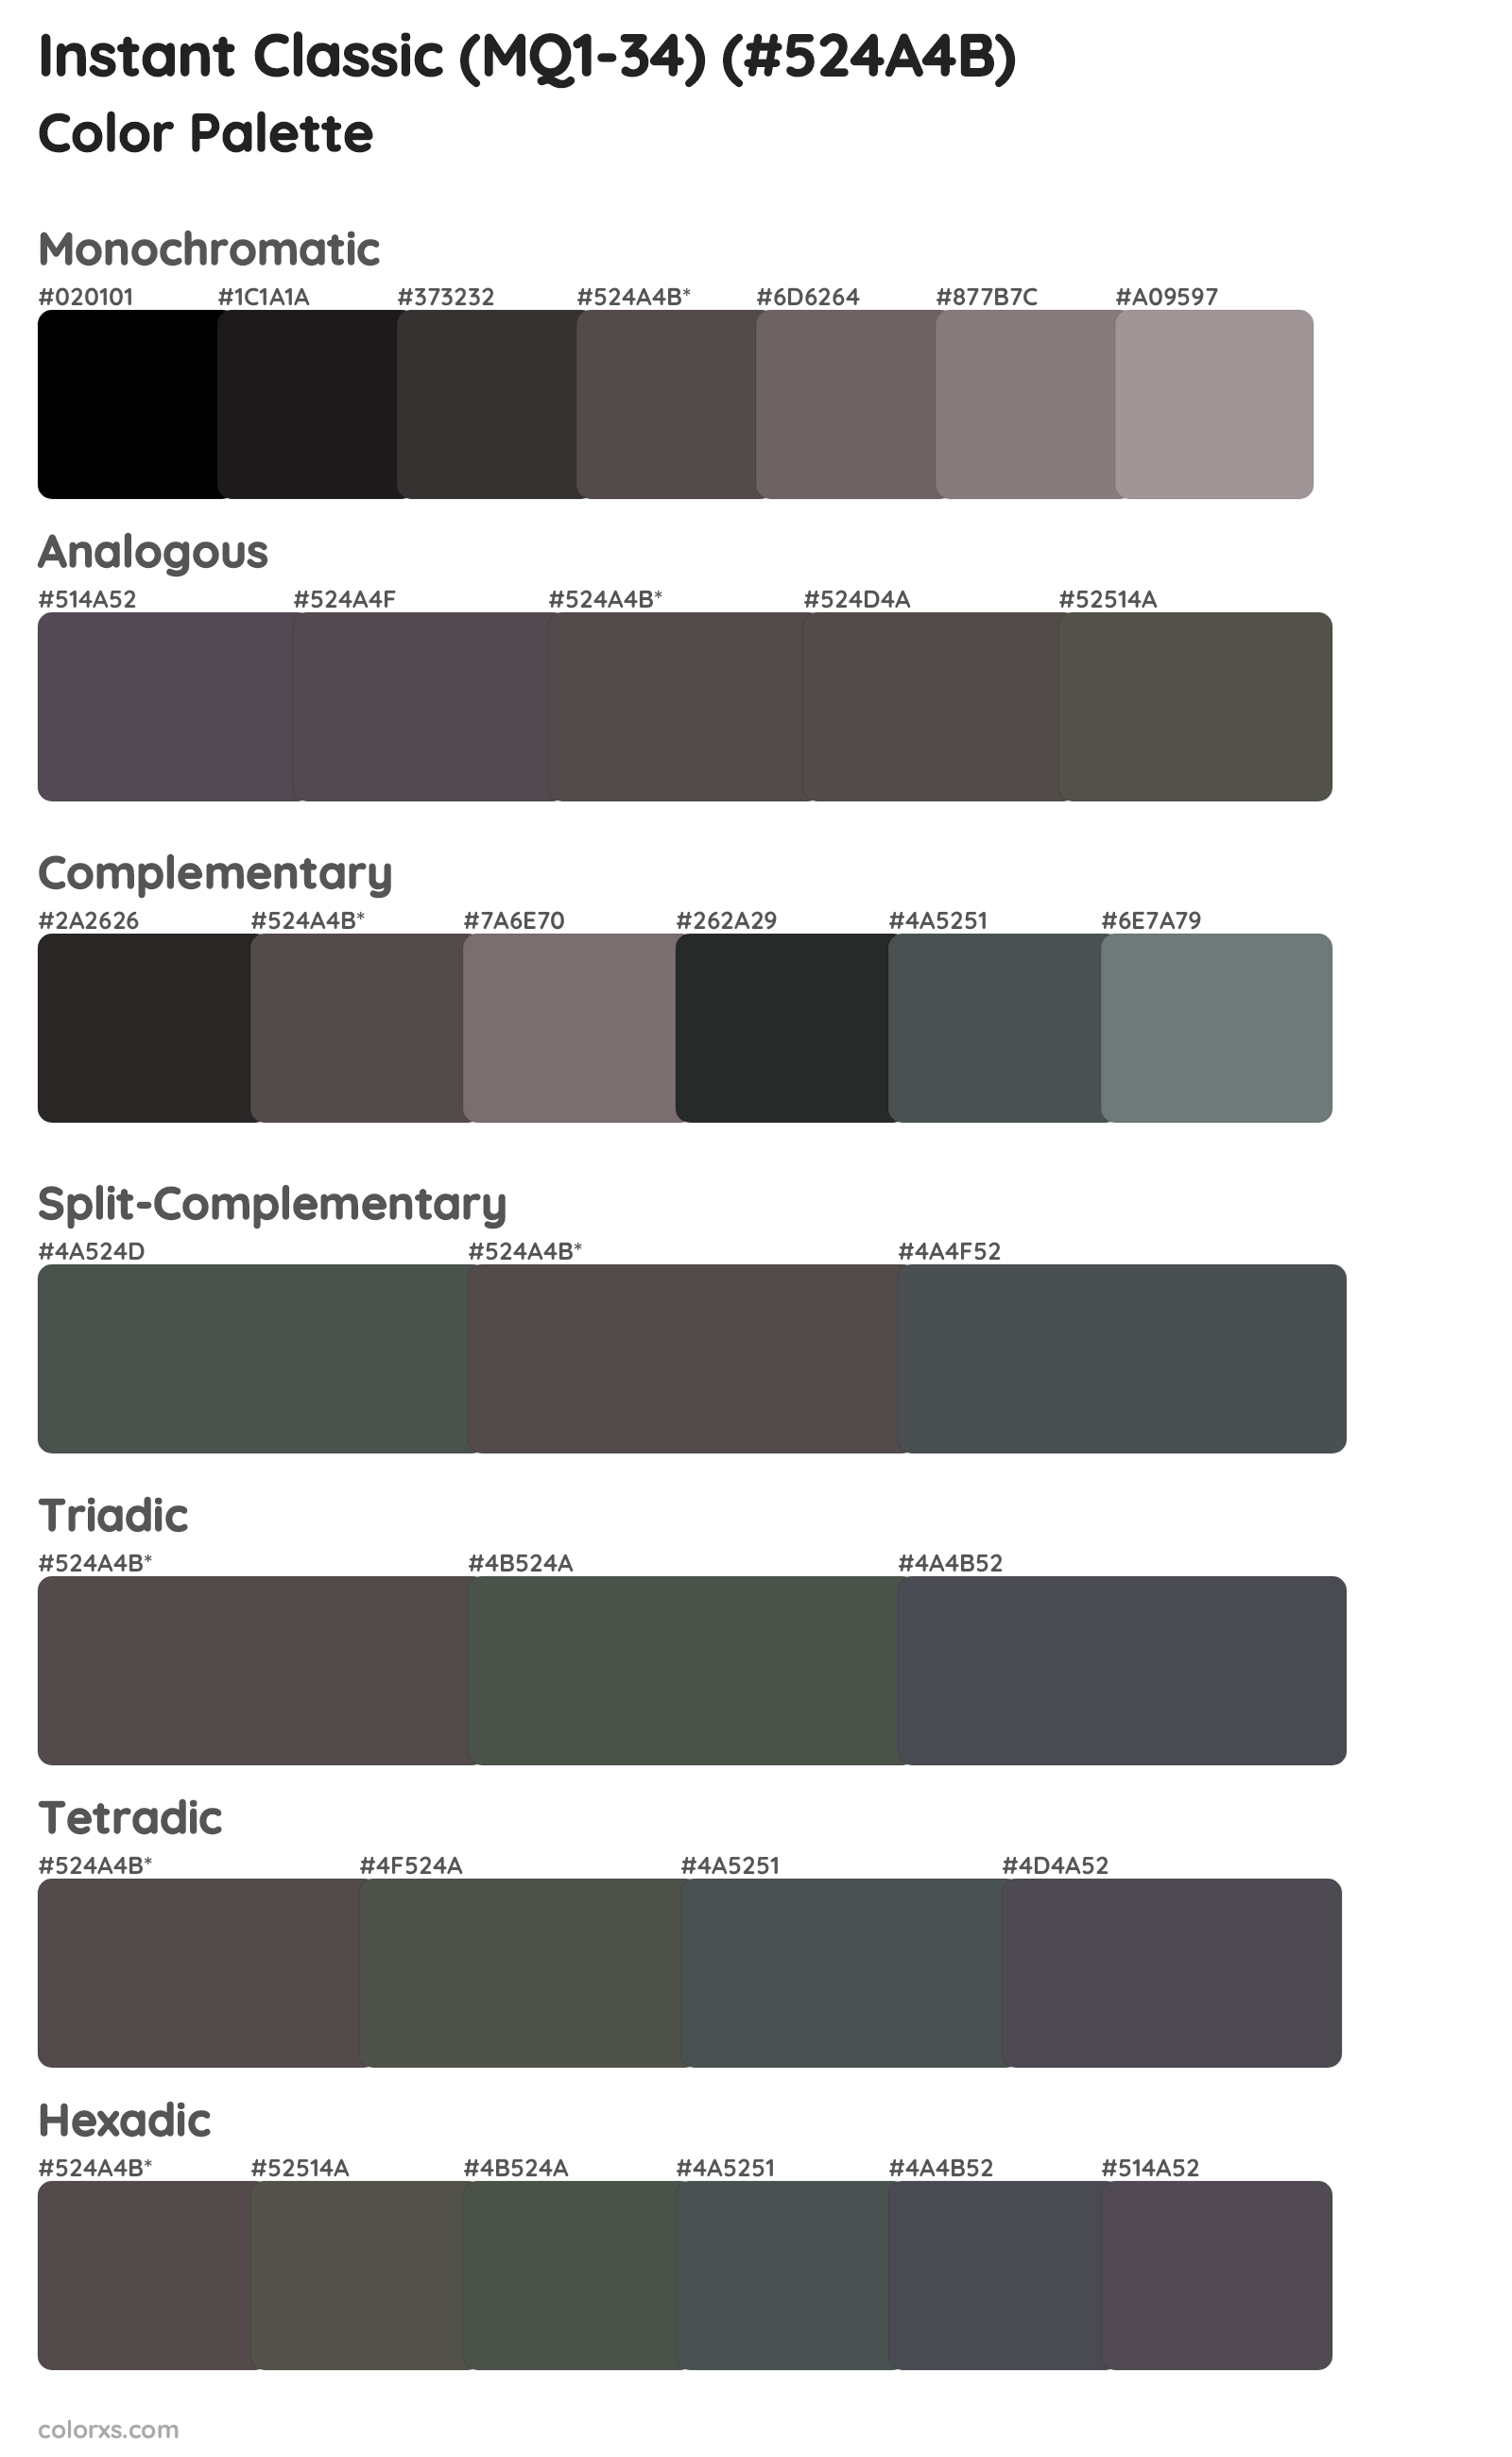 Instant Classic (MQ1-34) Color Scheme Palettes